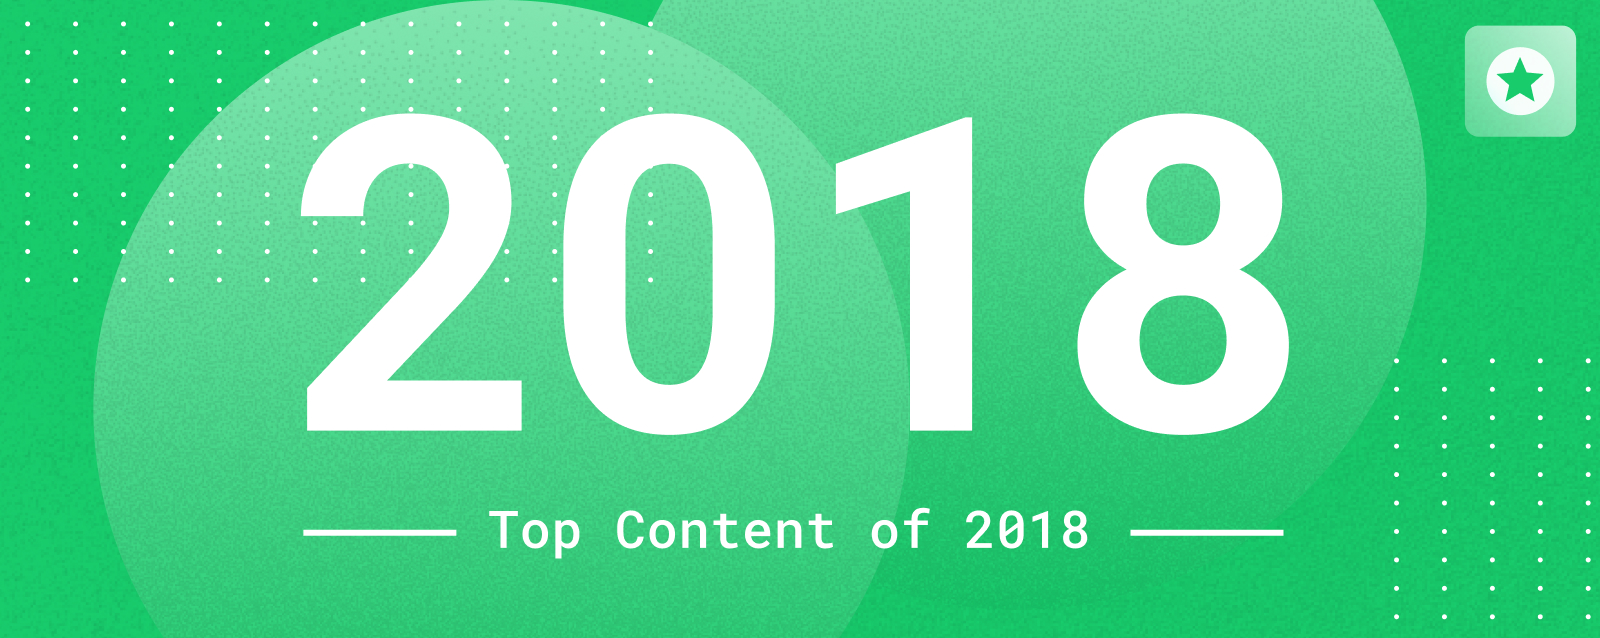 top-fleet-management-content-of-2018